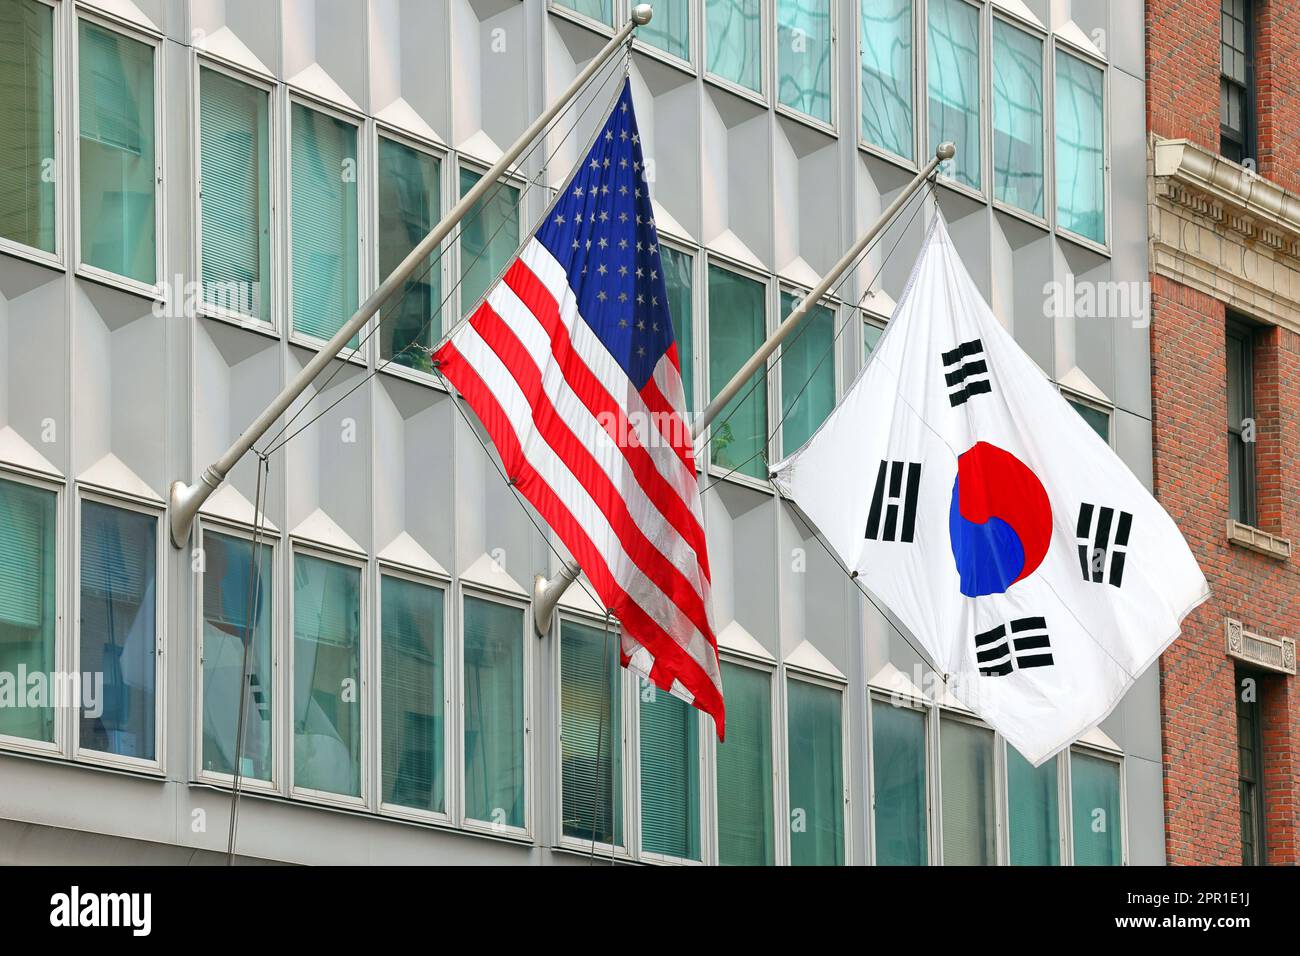 Die amerikanische Flagge und die südkoreanische Flagge 태극기, die Seite an Seite im Generalkonsulat der Republik Korea in New York City fliegen. Stockfoto